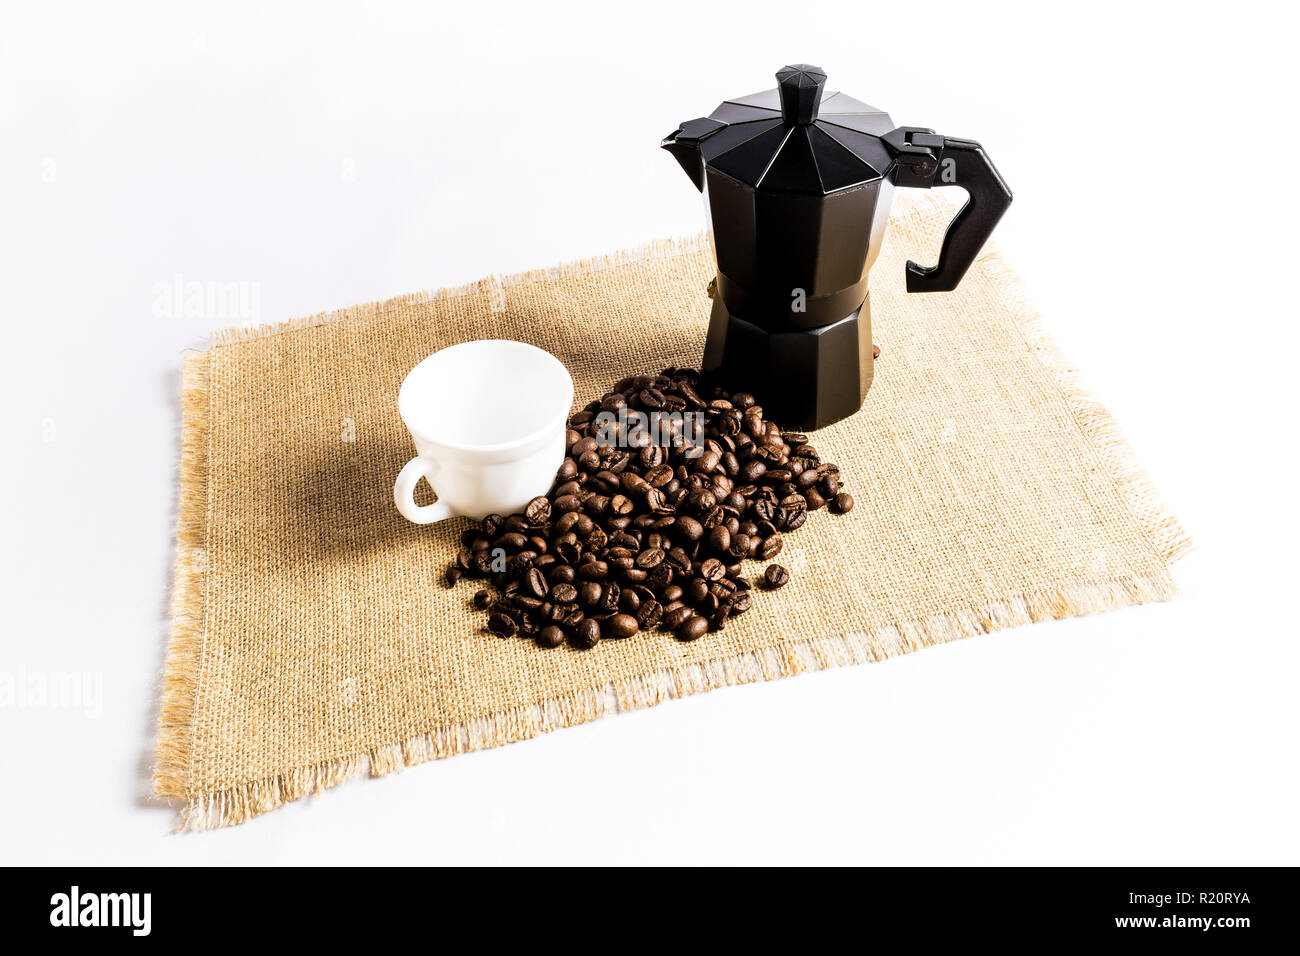 Les grains de café à côté d'une cafetière italienne et une tasse sur une  nappe en tissu Photo Stock - Alamy